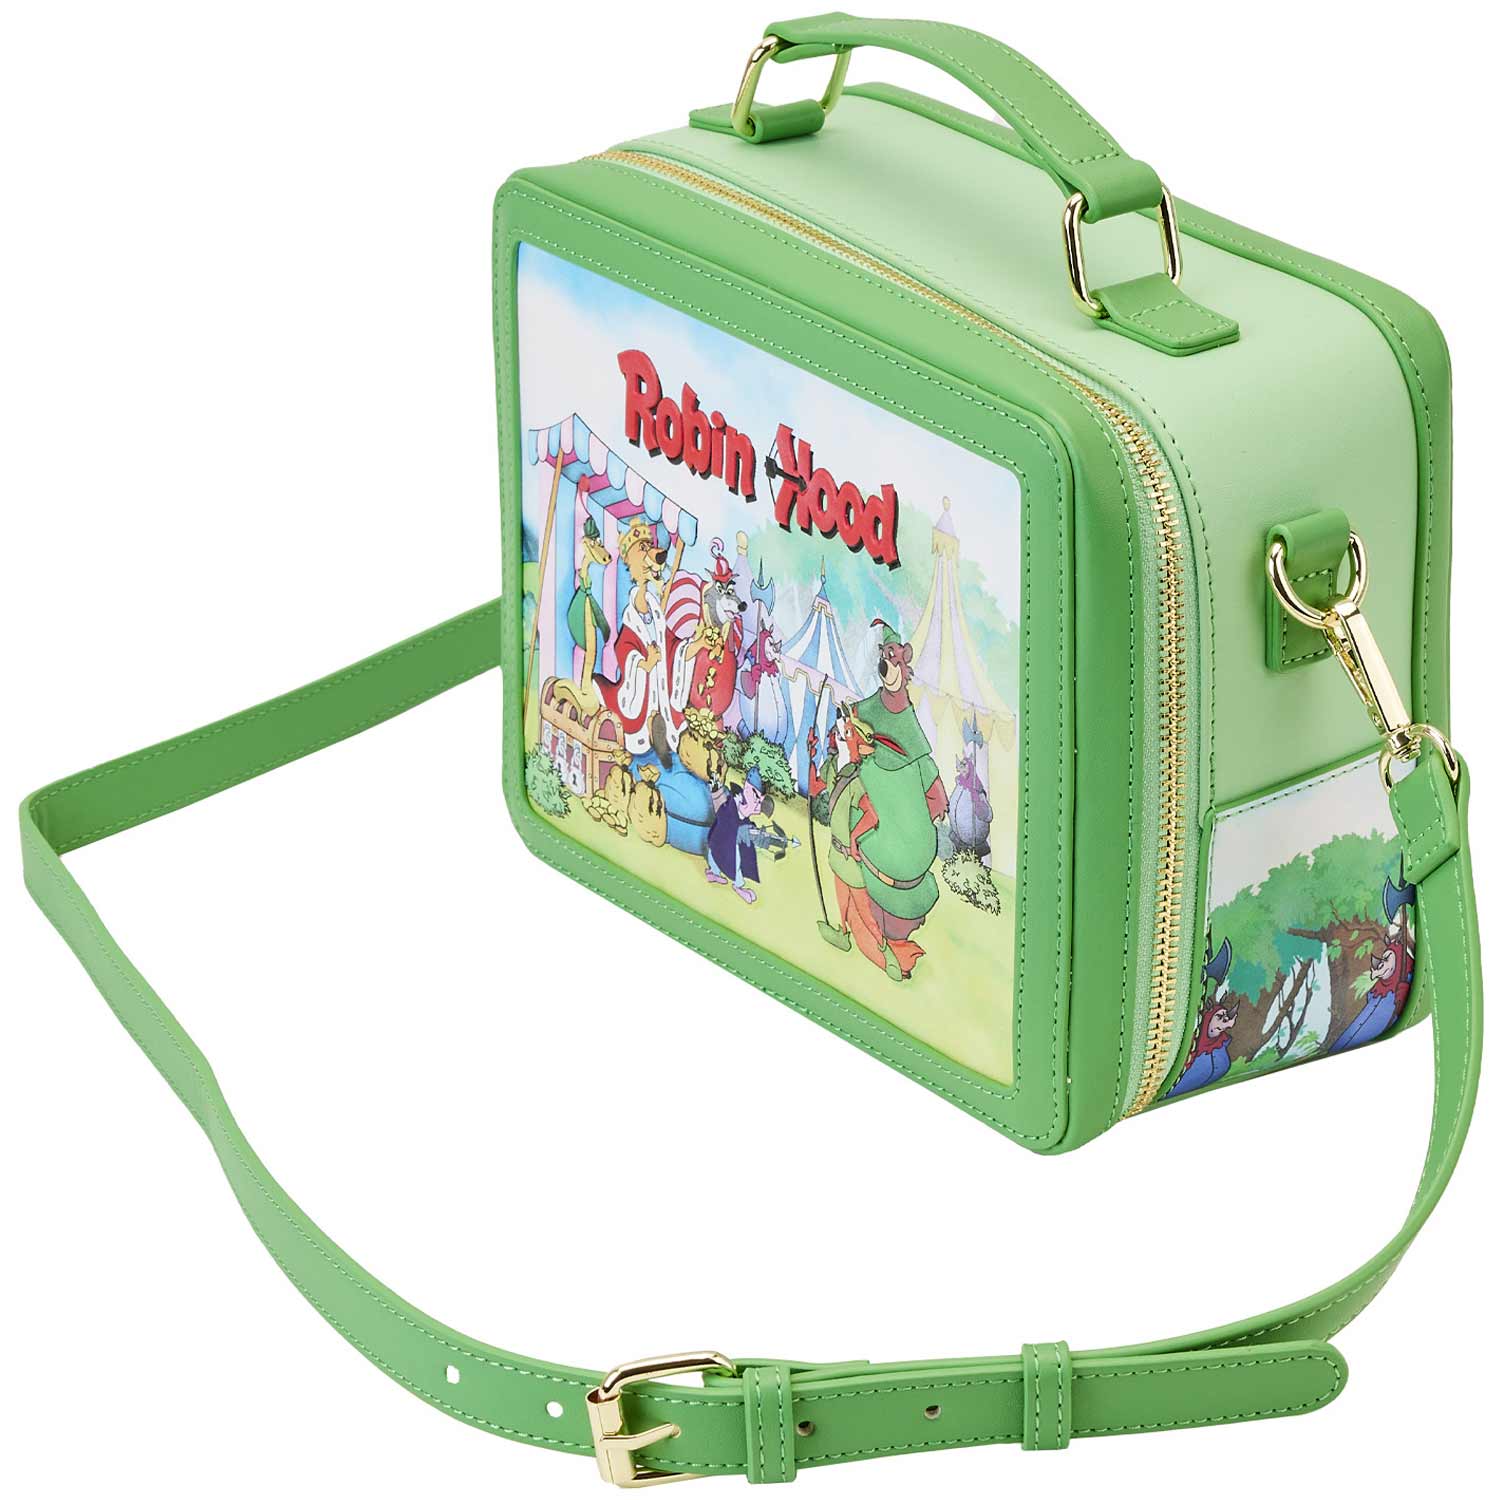 Loungefly x Disney Robin Hood Lunchbox Crossbody Bag